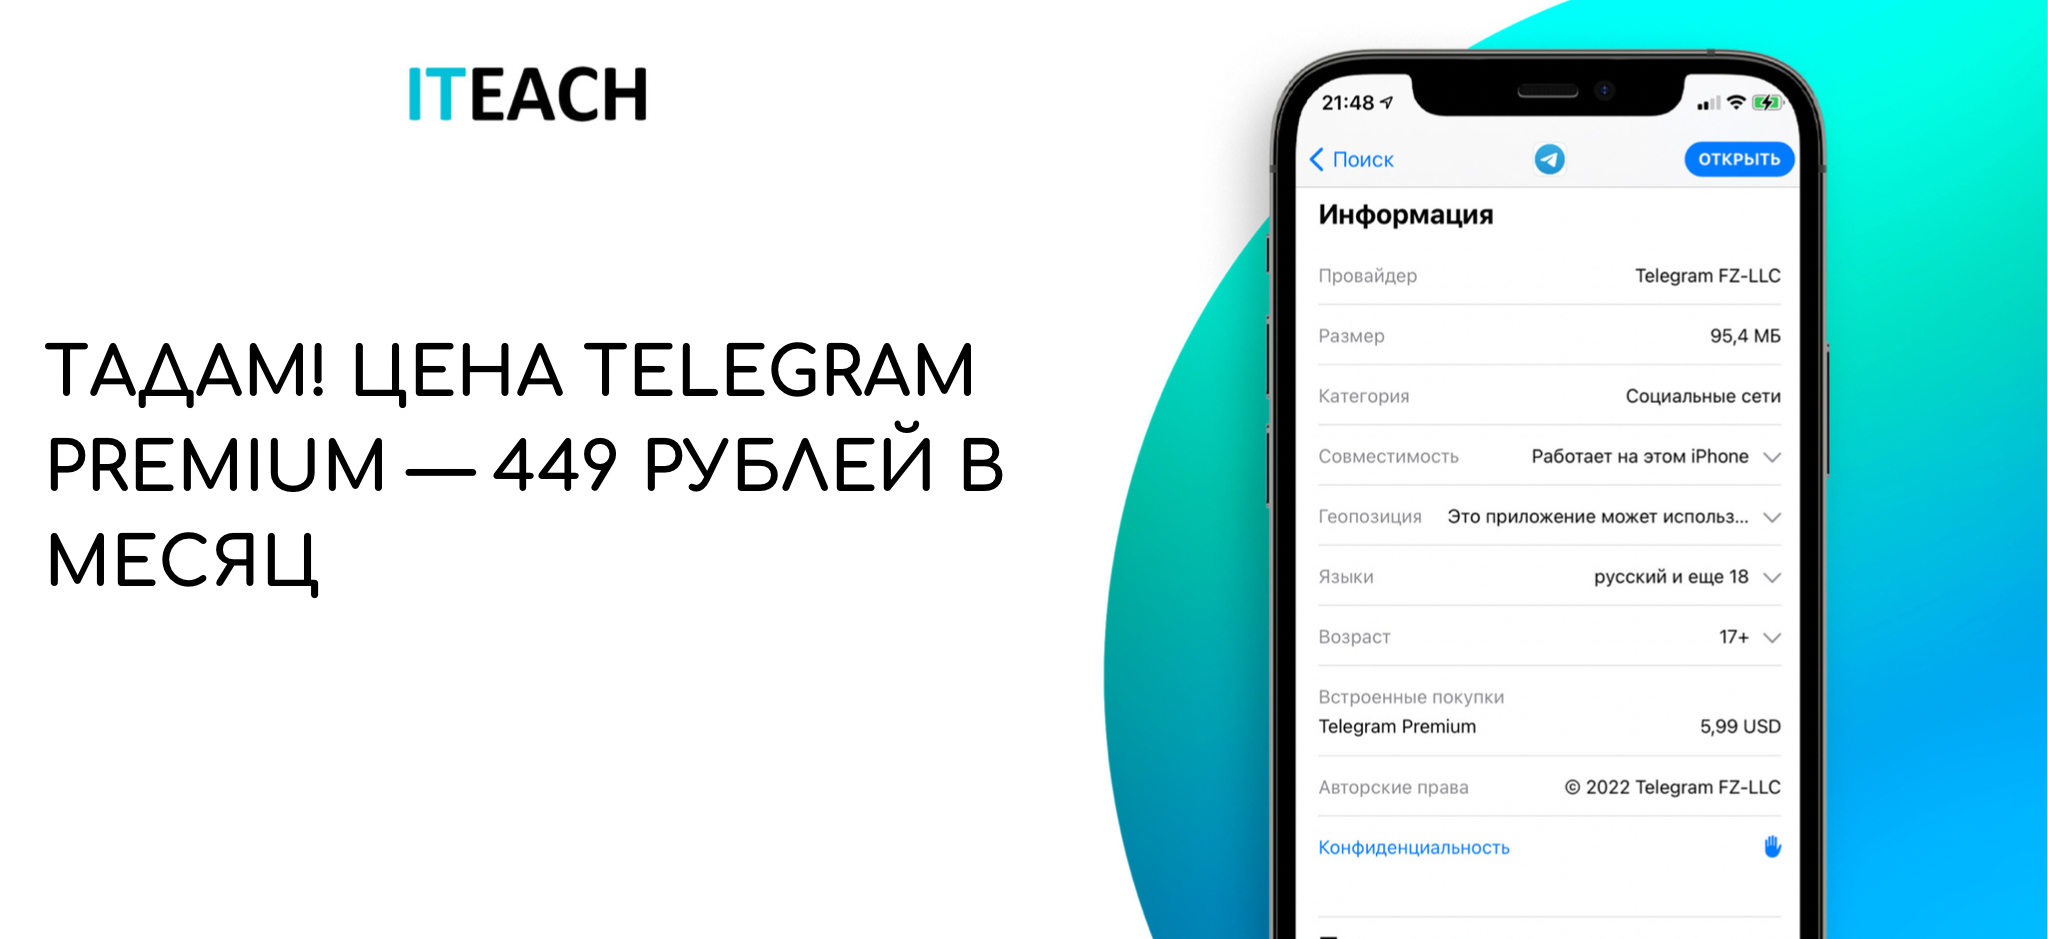 Телеграмм премиум бесплатно на андроид скачать последняя версия русском языке фото 98